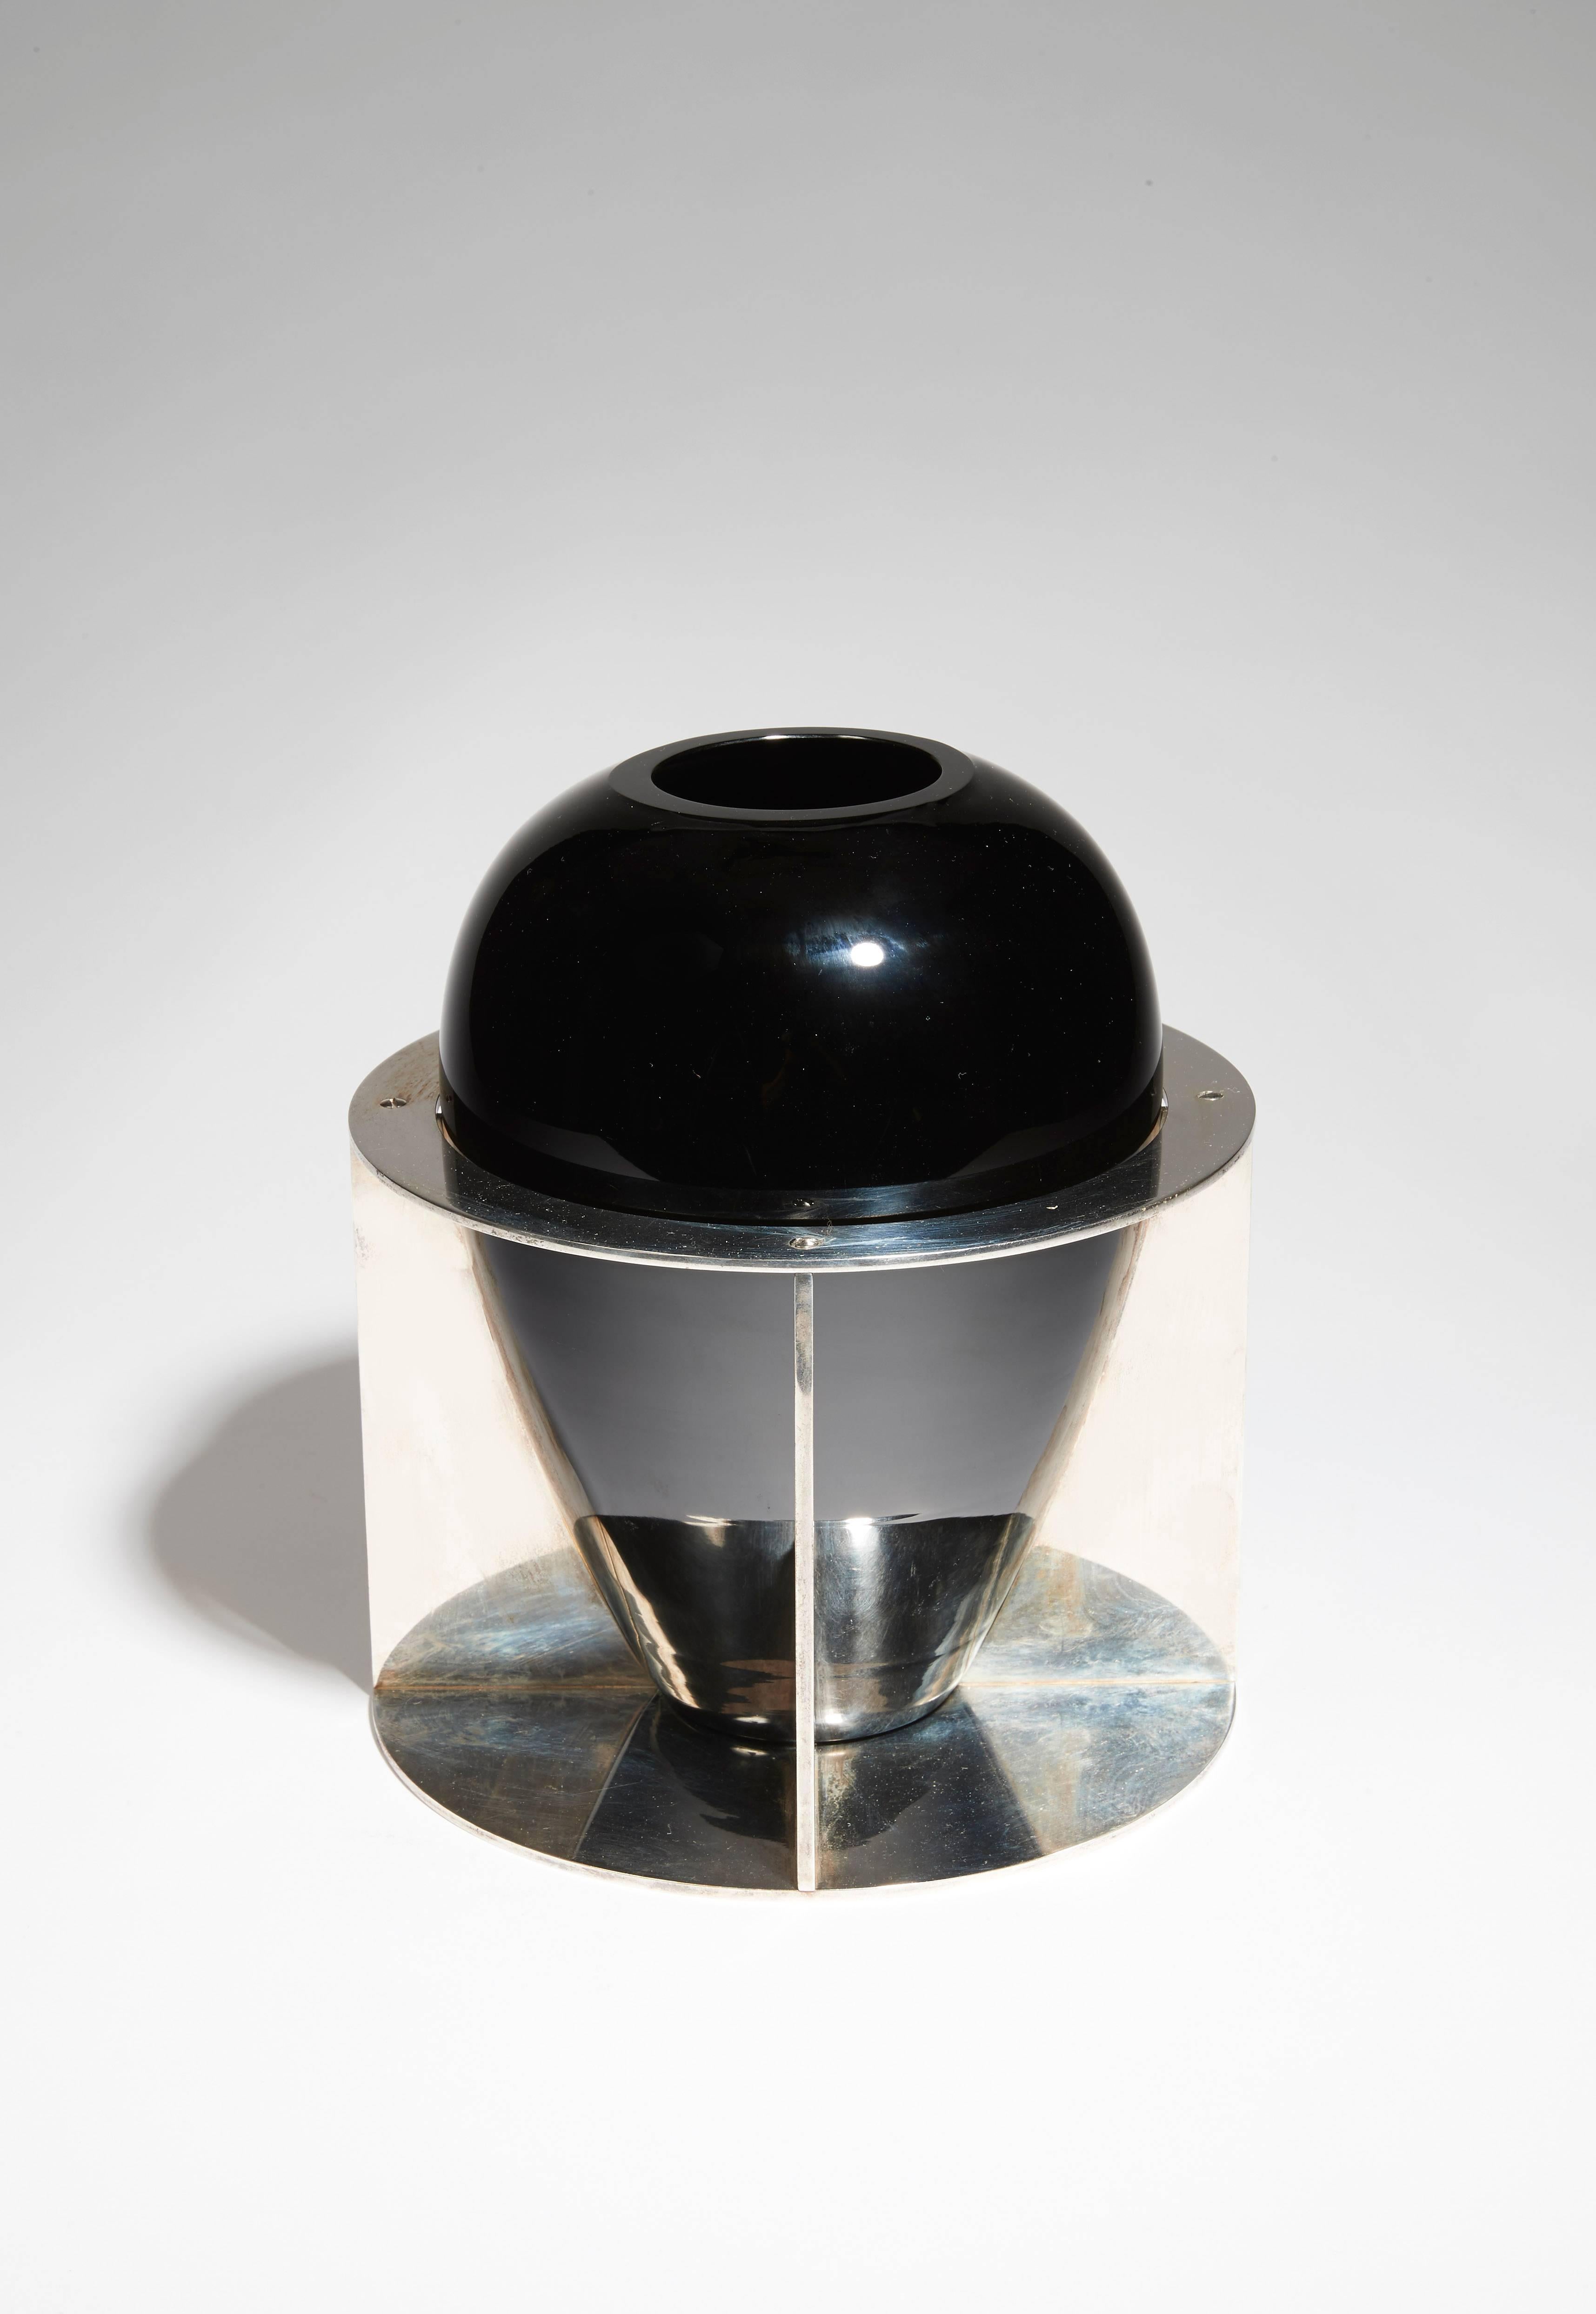 En verre noir opalin basé sur une structure en métal nickelé de forme circulaire avec des lames.

Signé avec le cachet 